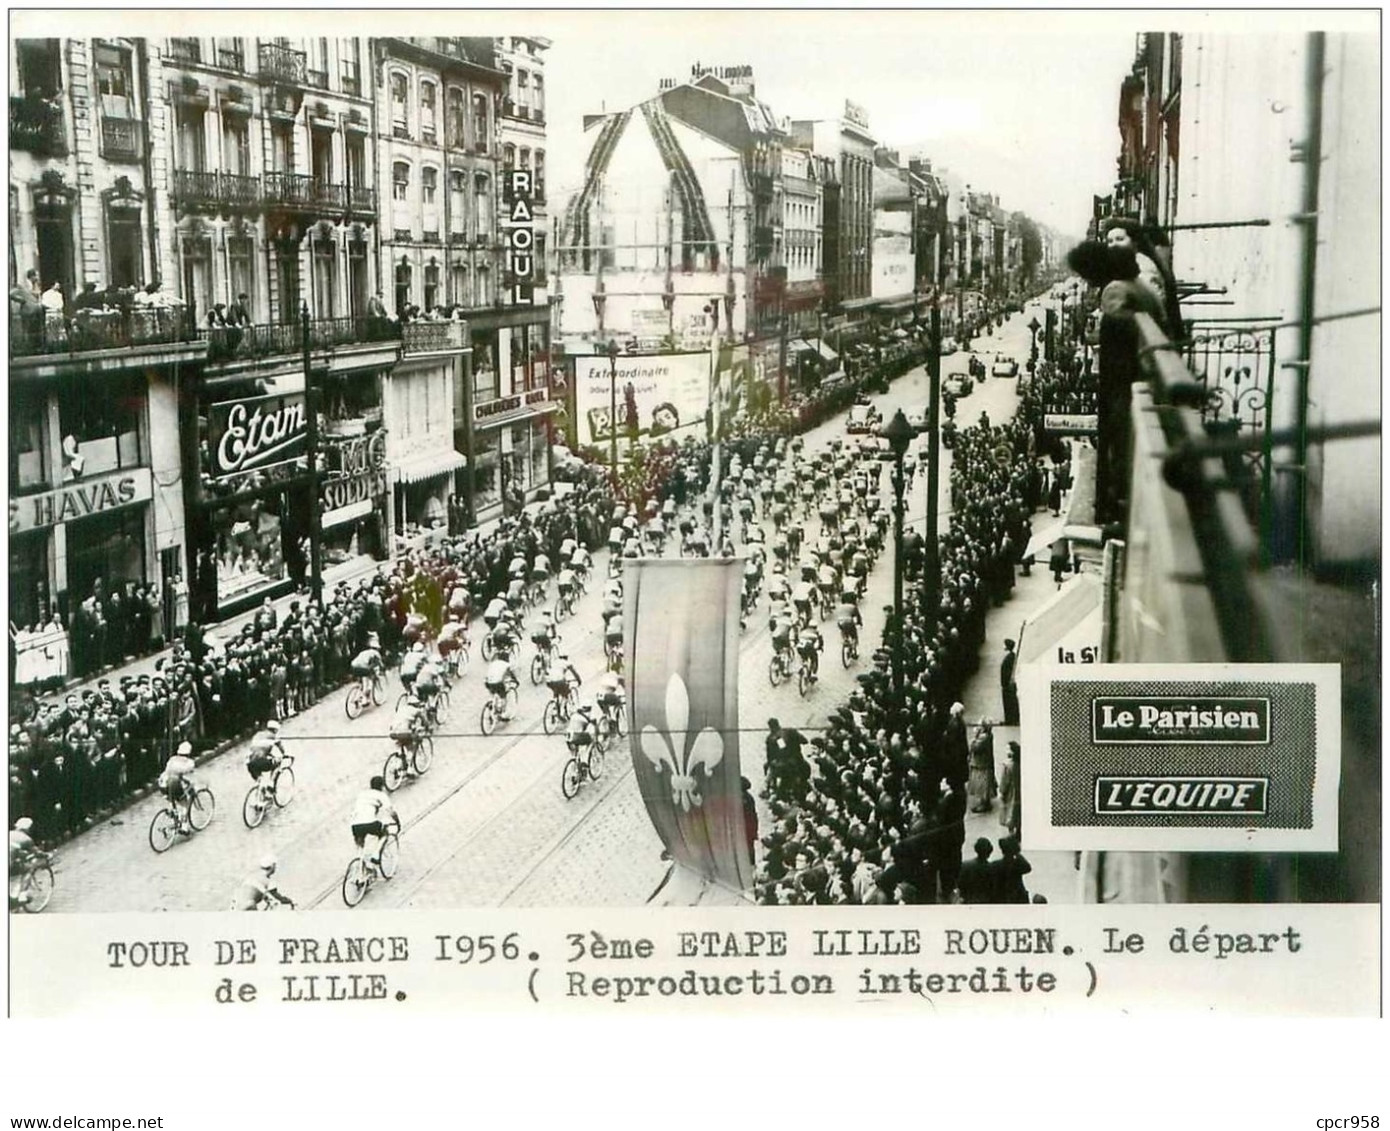 PHOTO DE PRESSE ORIGINALE TOUR DE FRANCE 1956.20X15.3eme ETAPE LILLE ROUEN.LE DEPART DE LILLE.n°18658 - Ciclismo